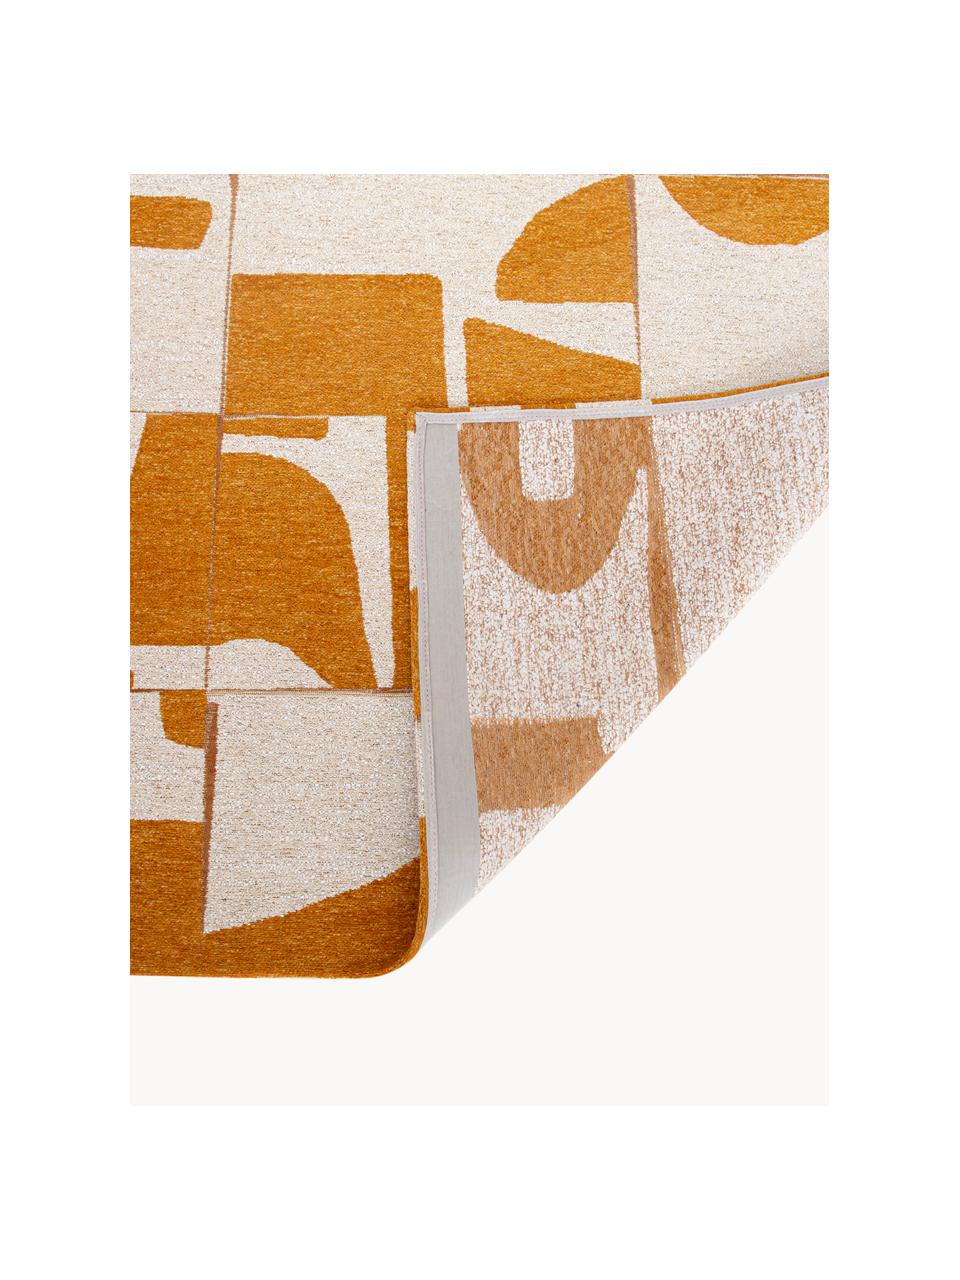 Koberec s grafickým vzorem Papercut, 100 % polyester, Okrová, krémově bílá, Š 80 cm, D 150 cm (velikost XS)